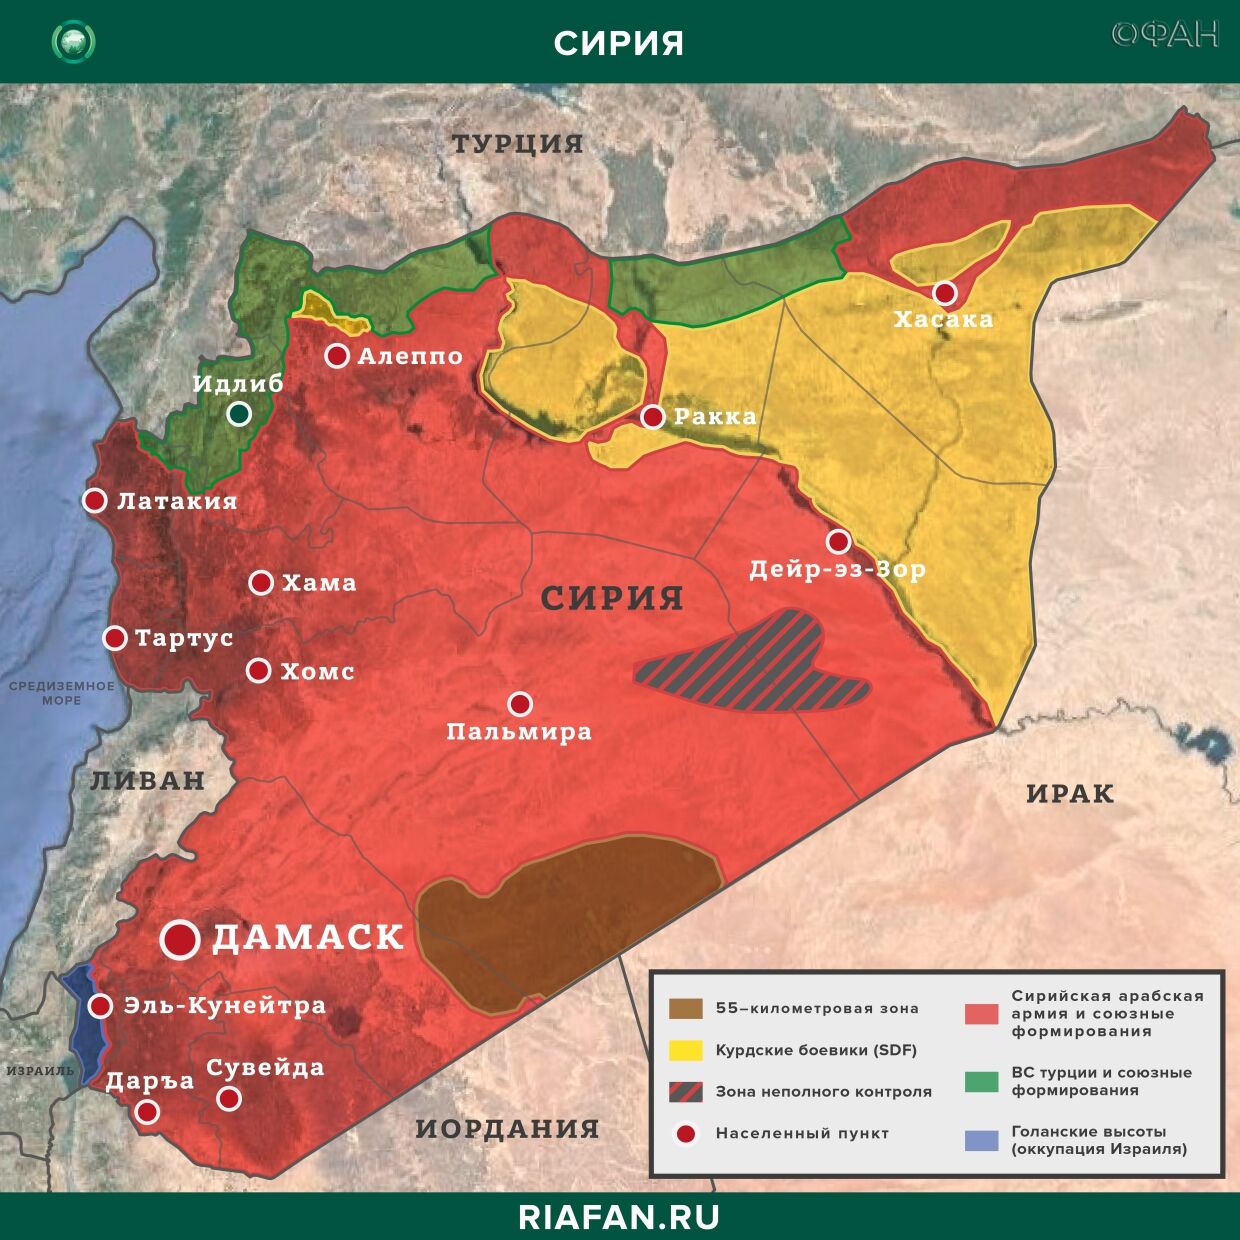 Сирия новости 28 мая 22.30: беспорядочная стрельба боевиков в Африне, Турция заявила о нейтрализации 3 членов РПК в Ираке